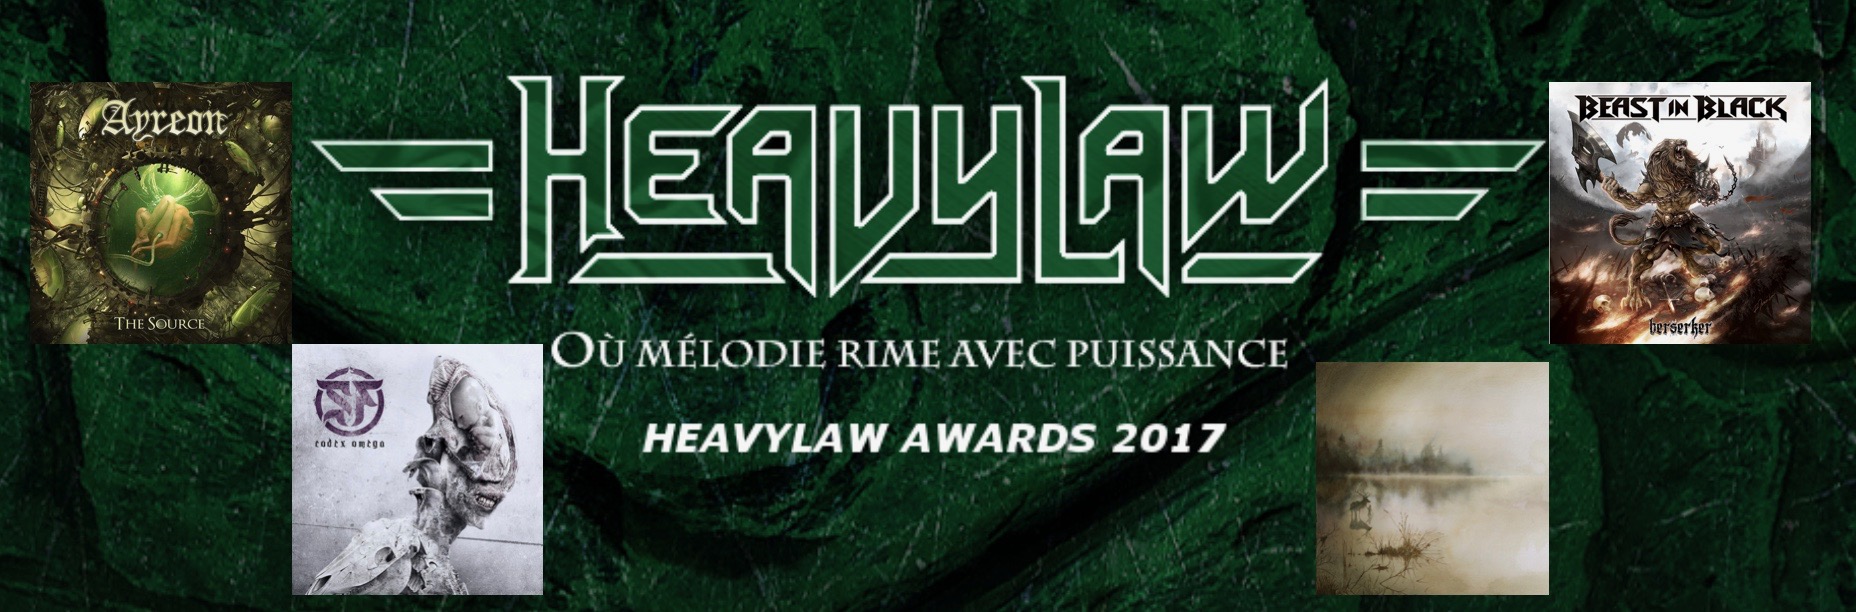 Heavylaw-Awards-2017